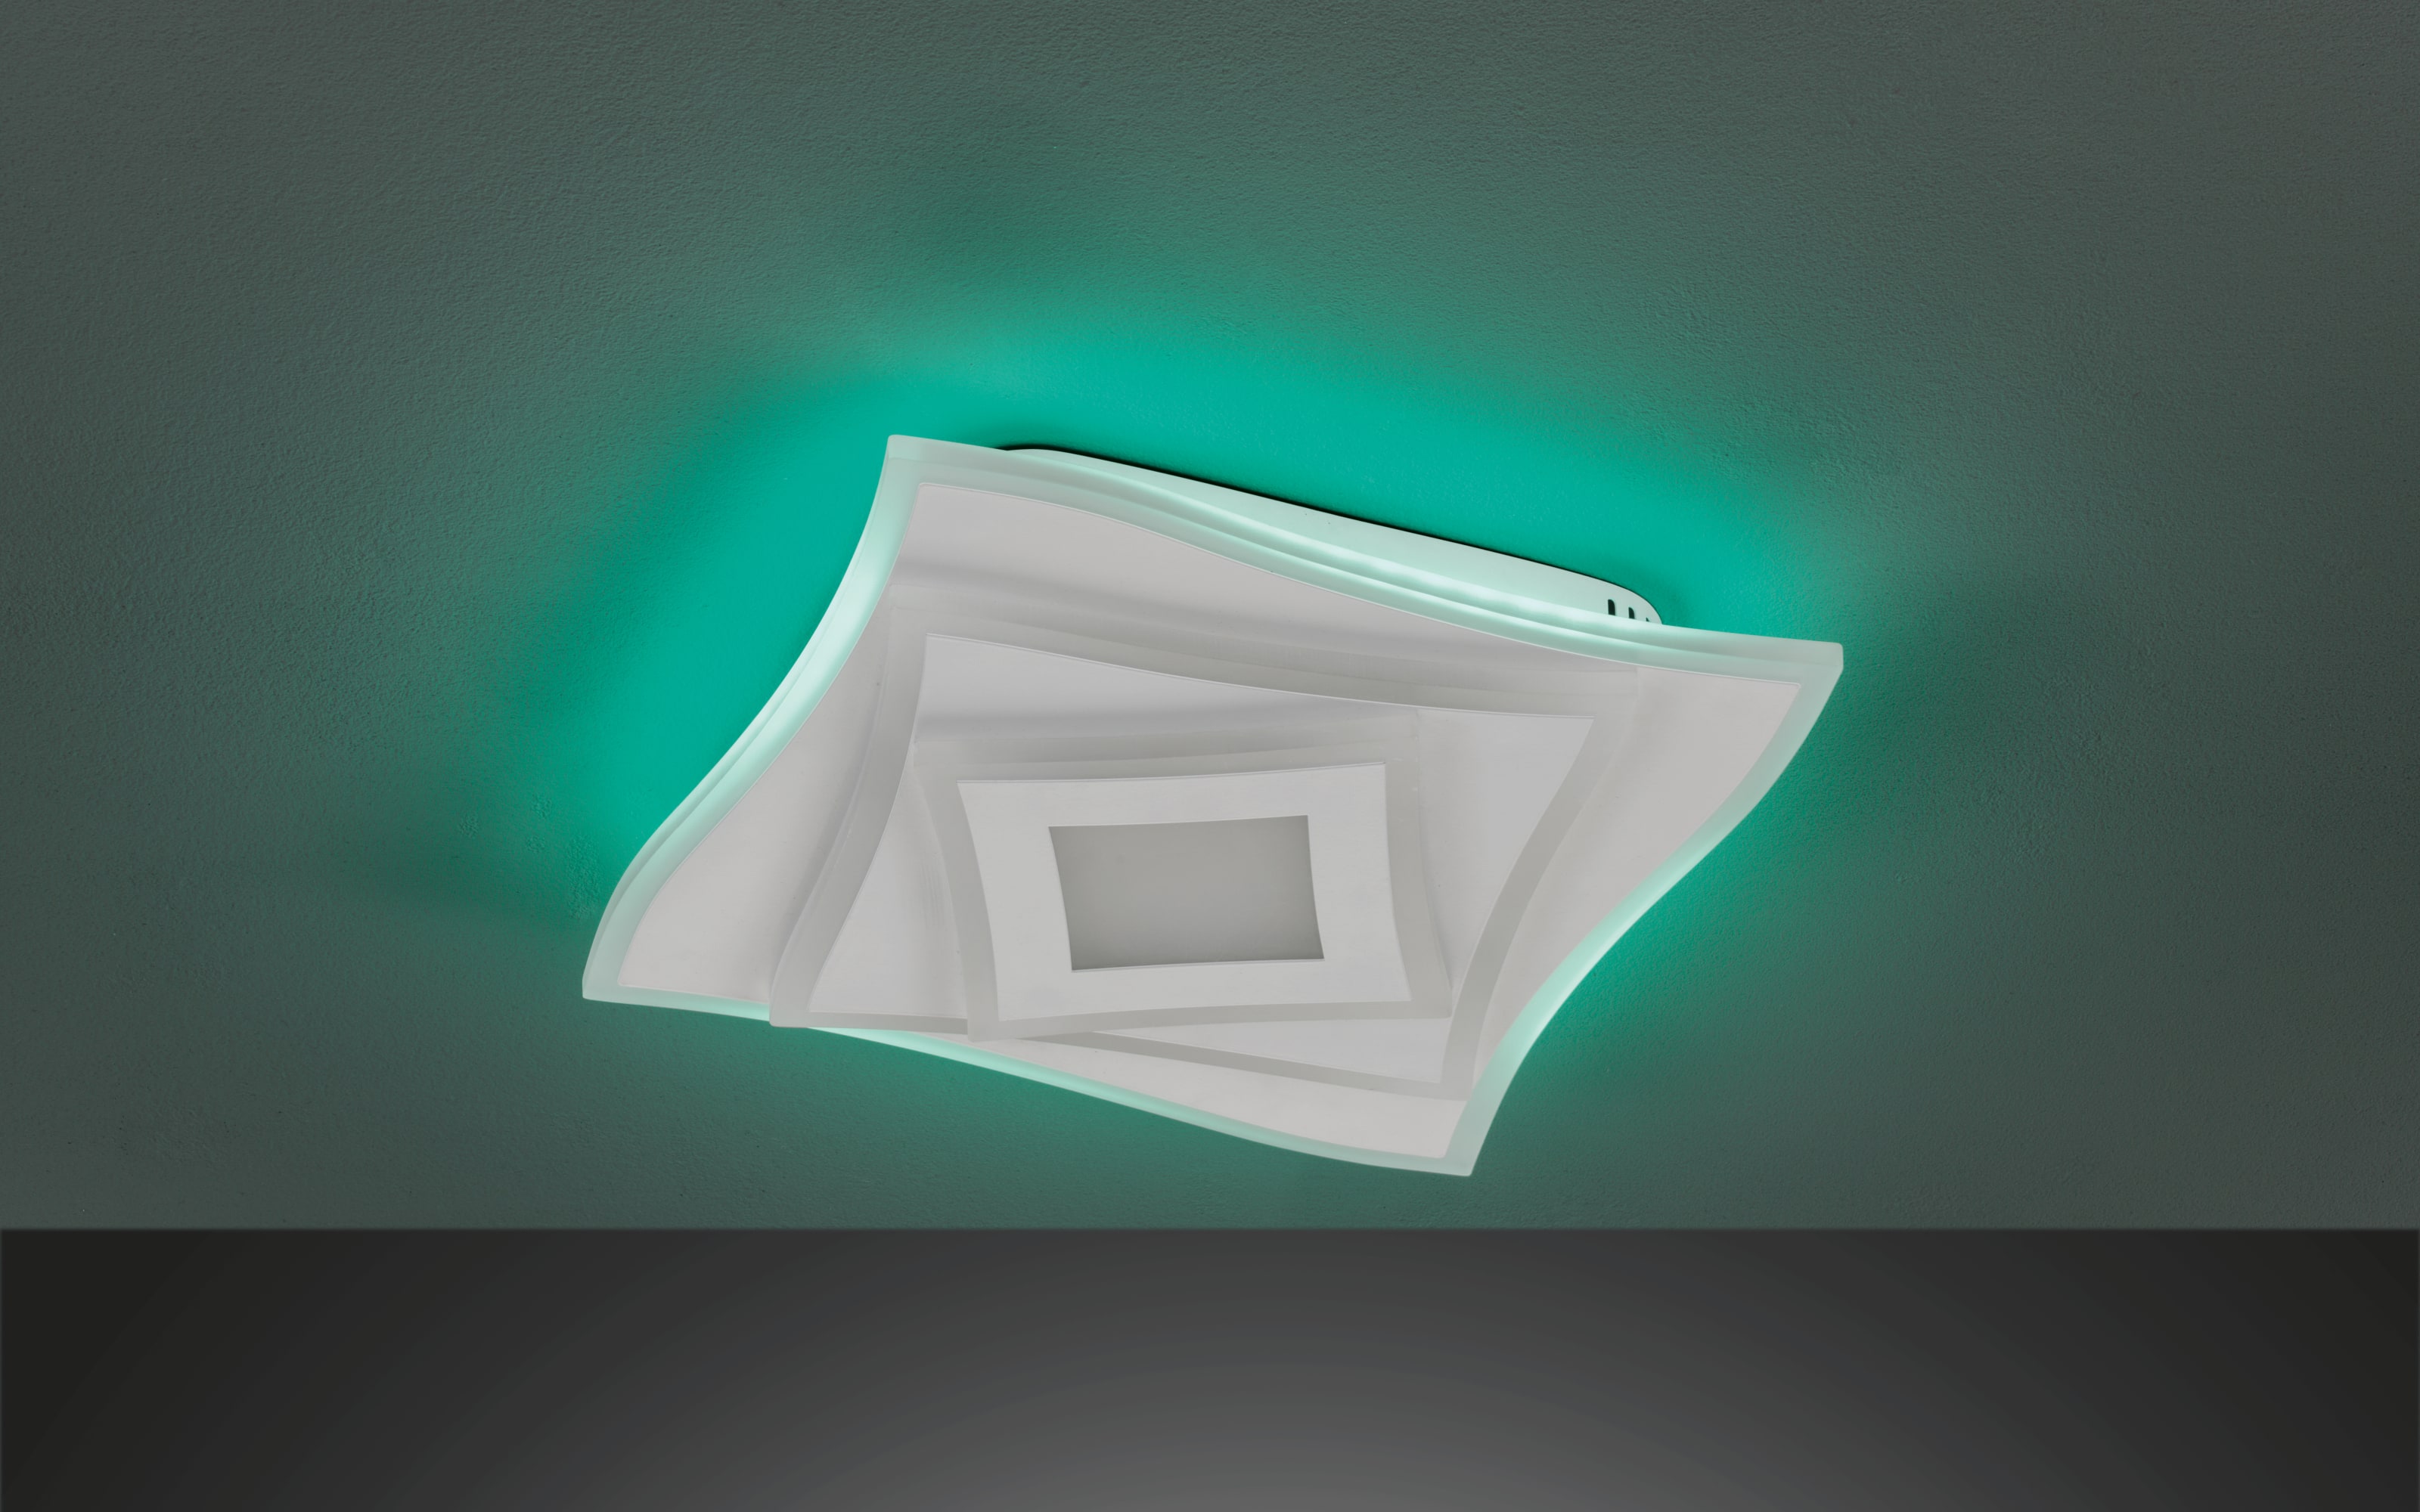 LED-Deckenleuchte Hero CCT RGBW in weiß, ca. 32 x 32 cm